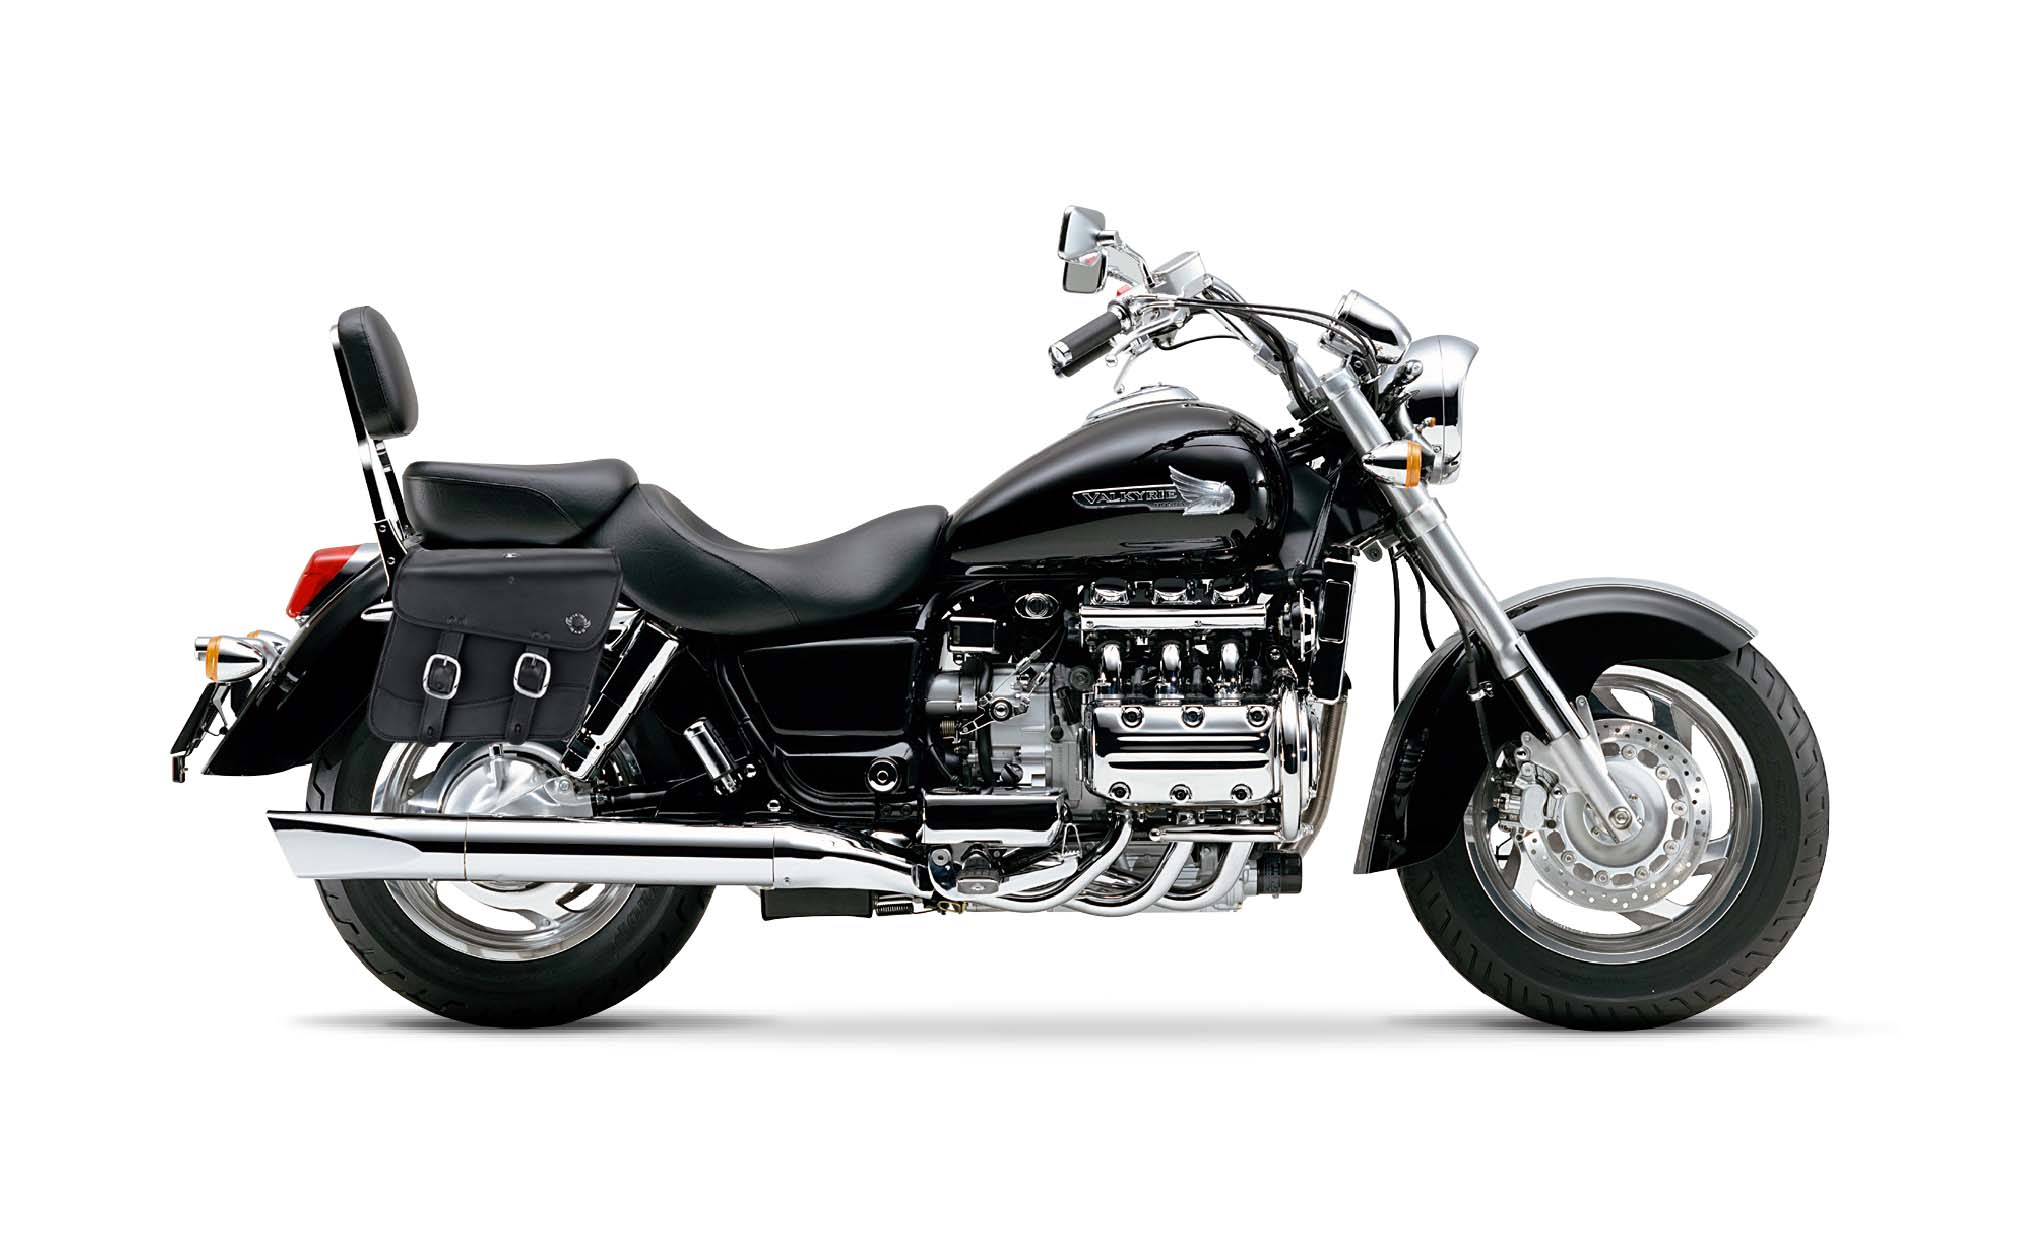 Viking Thor Medium Honda Valkyrie 1500 Standard Leather Motorcycle Saddlebags on Bike Photo @expand